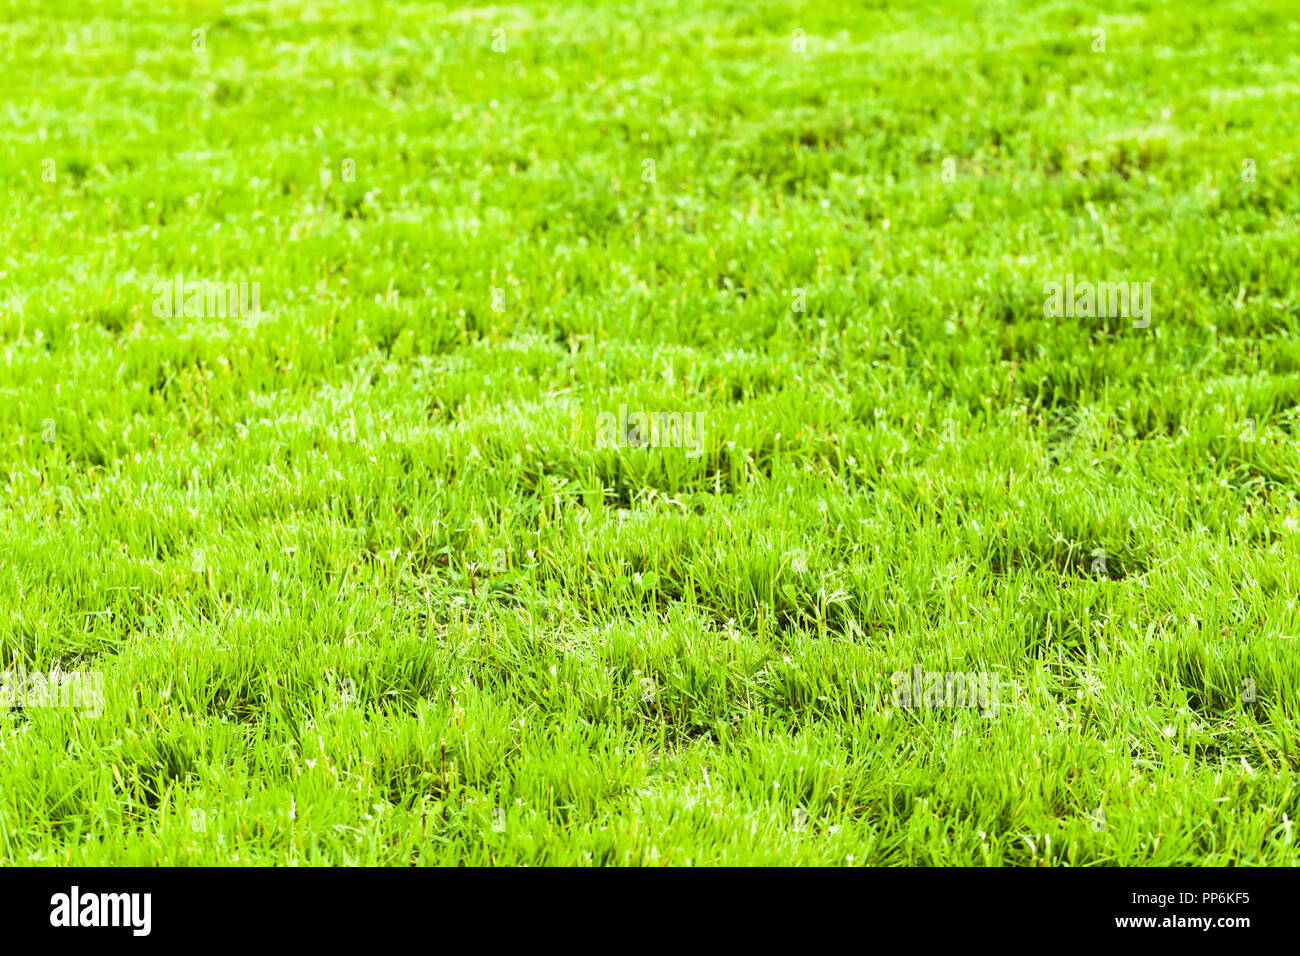 Helle grüne frische Gras Hintergrund, Makro Foto mit selektiven Fokus. Abgeschnittene Rasen im Sommer sonnigen Tag Stockfoto